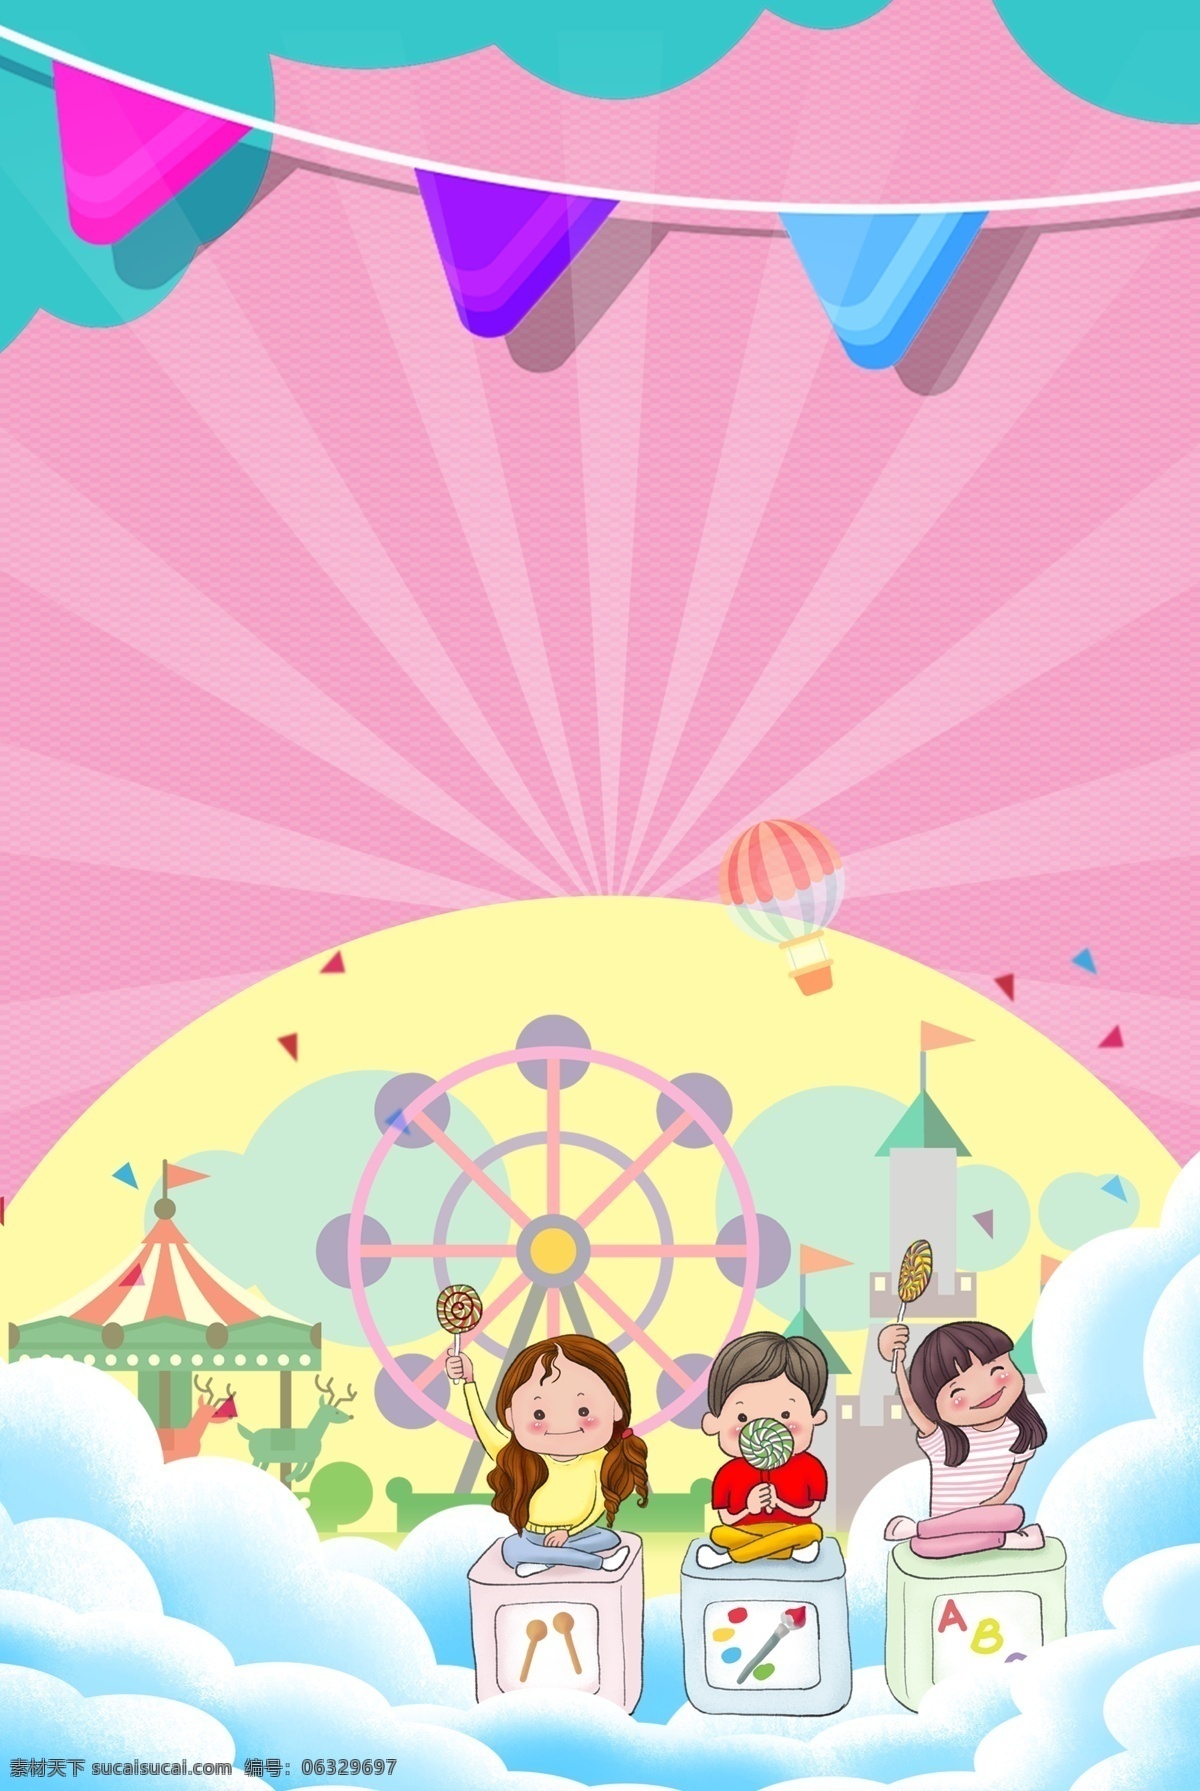 简约 小 清新 庆祝 六一儿童节 背景 六一节 儿童节 可爱 小清新 卡通 矢量 促销 商业